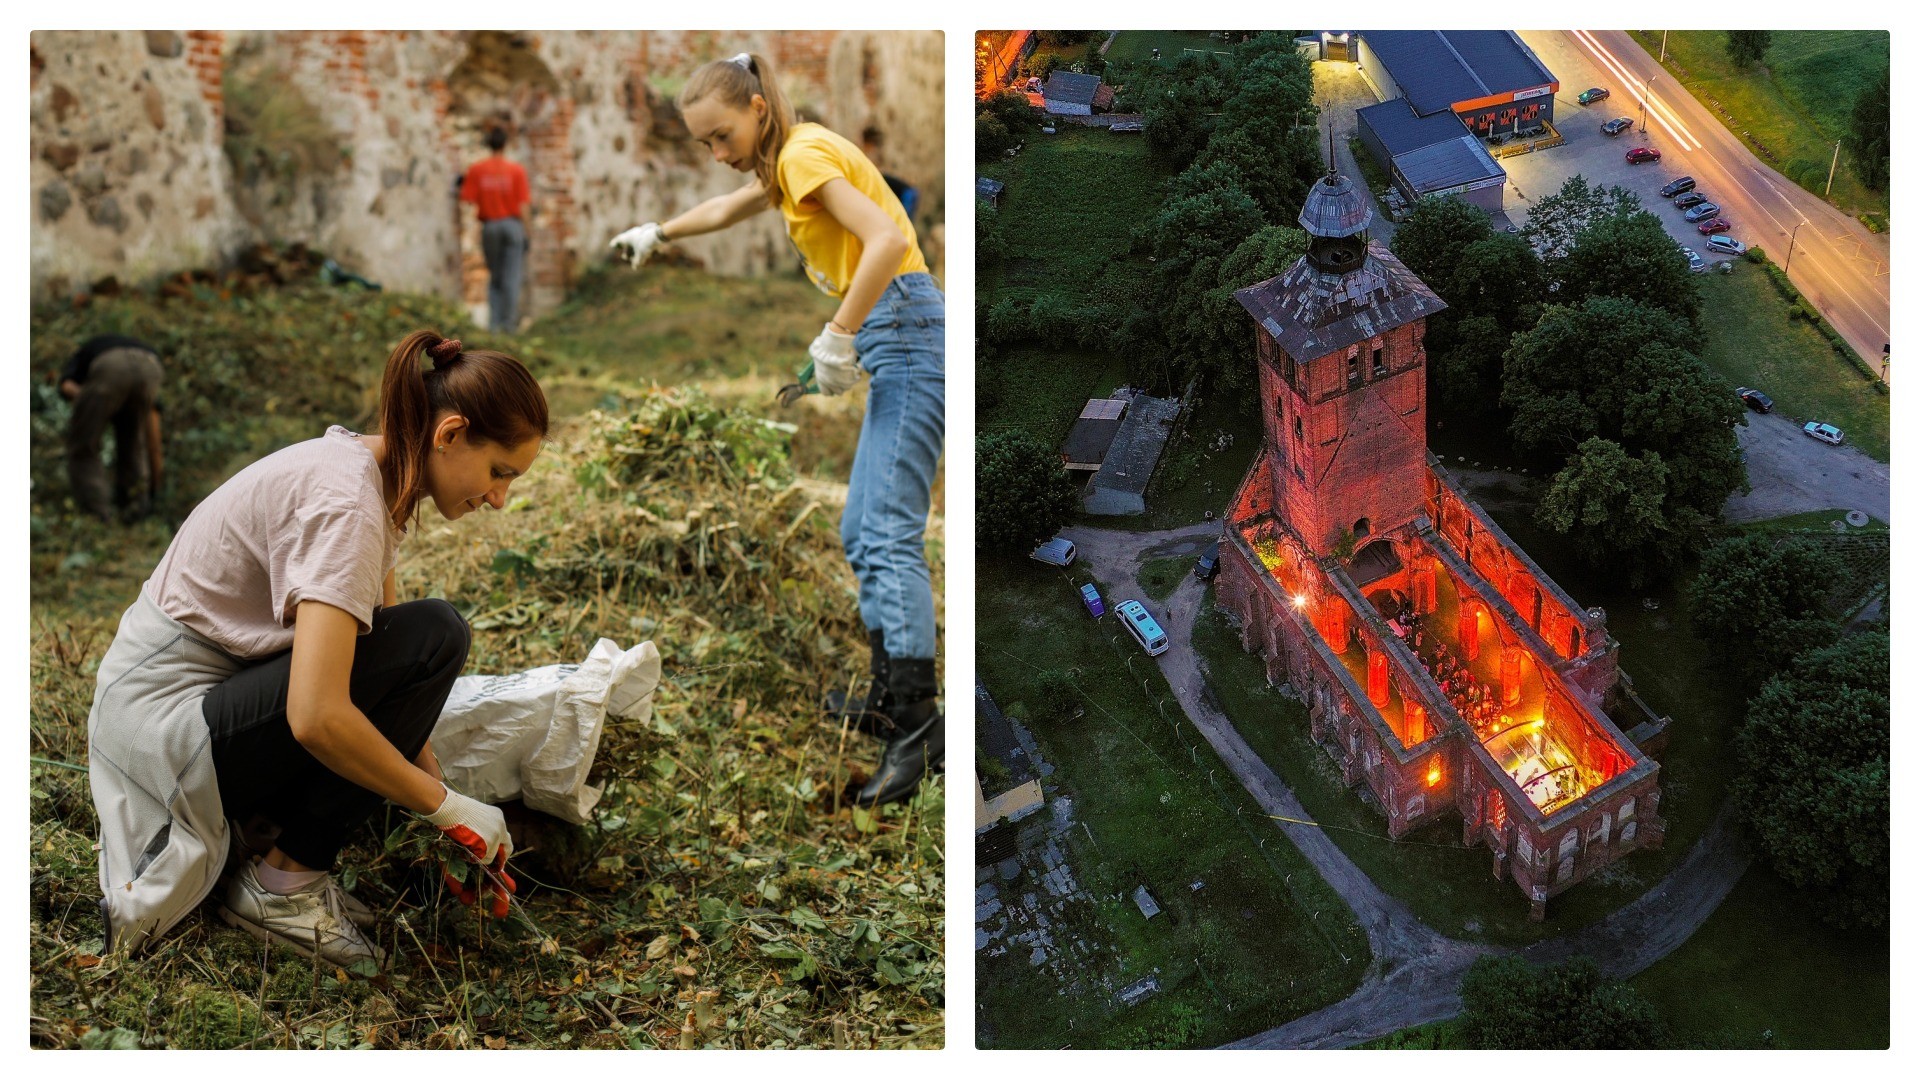 À esq., voluntários limpam castelo, à dir., show nas ruínas.